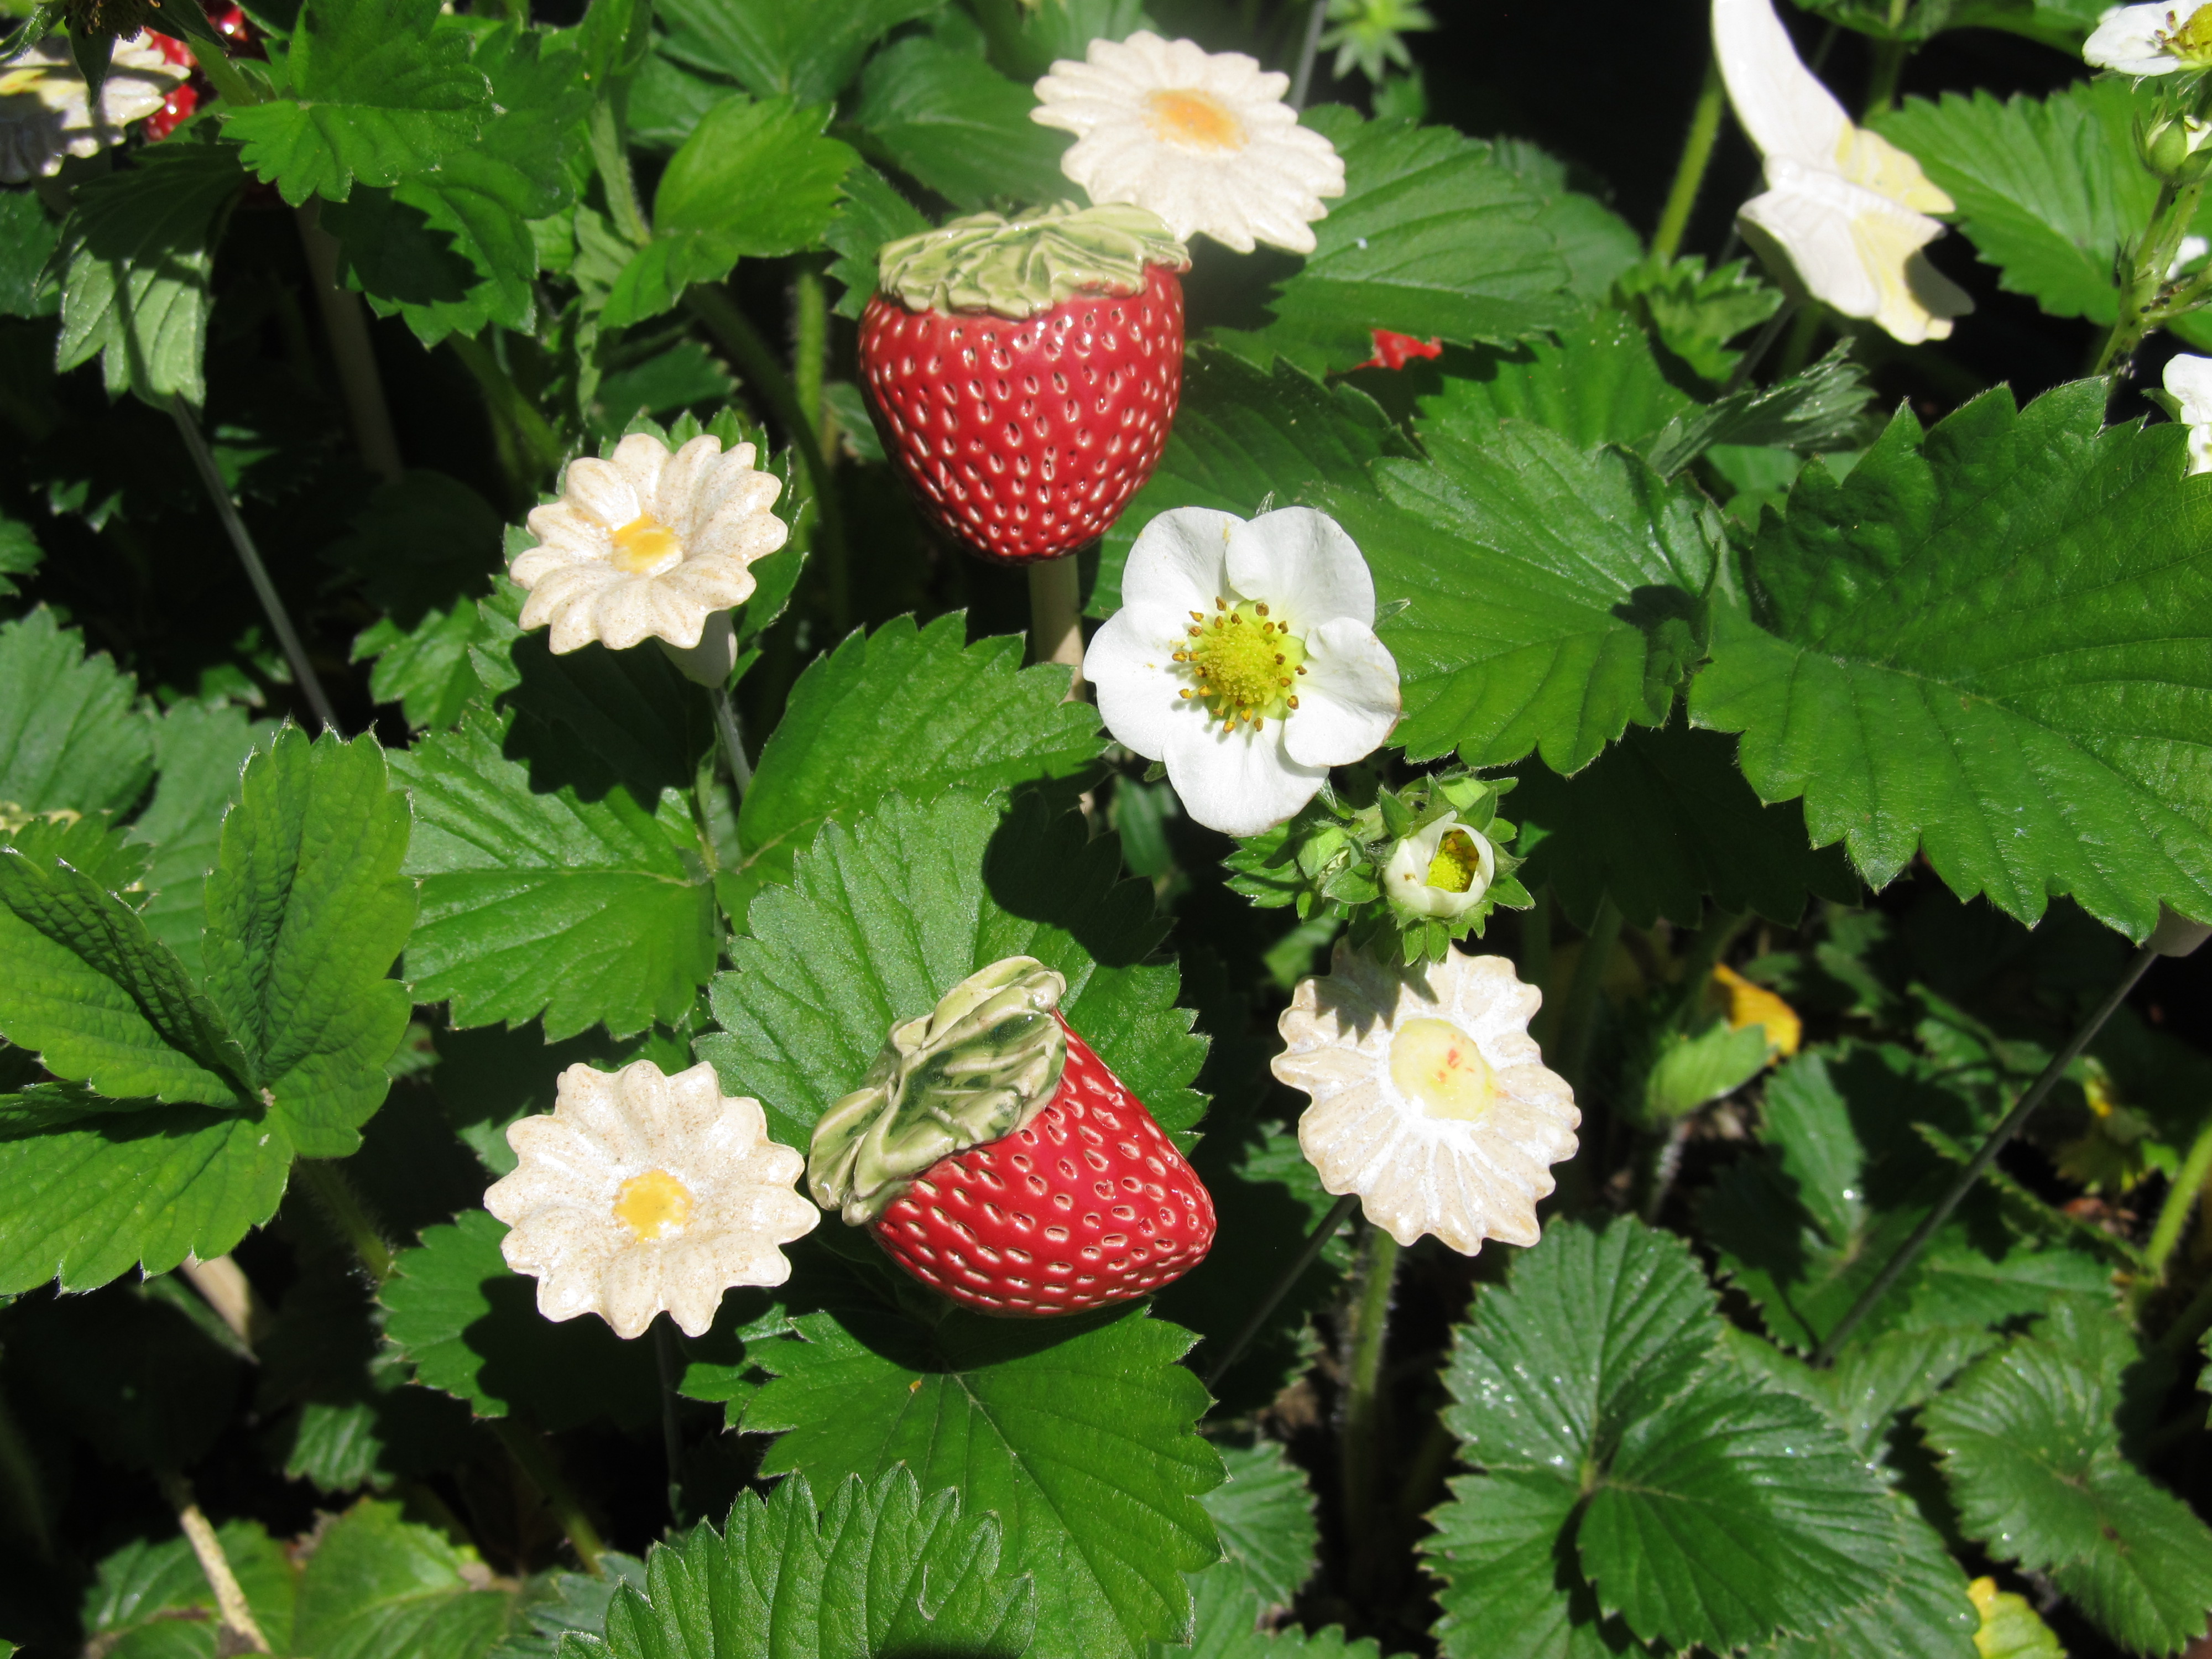 Steck- Blümchen ähnlich Margerite Edelweiß Erdbeerblüte Creme- Weiß